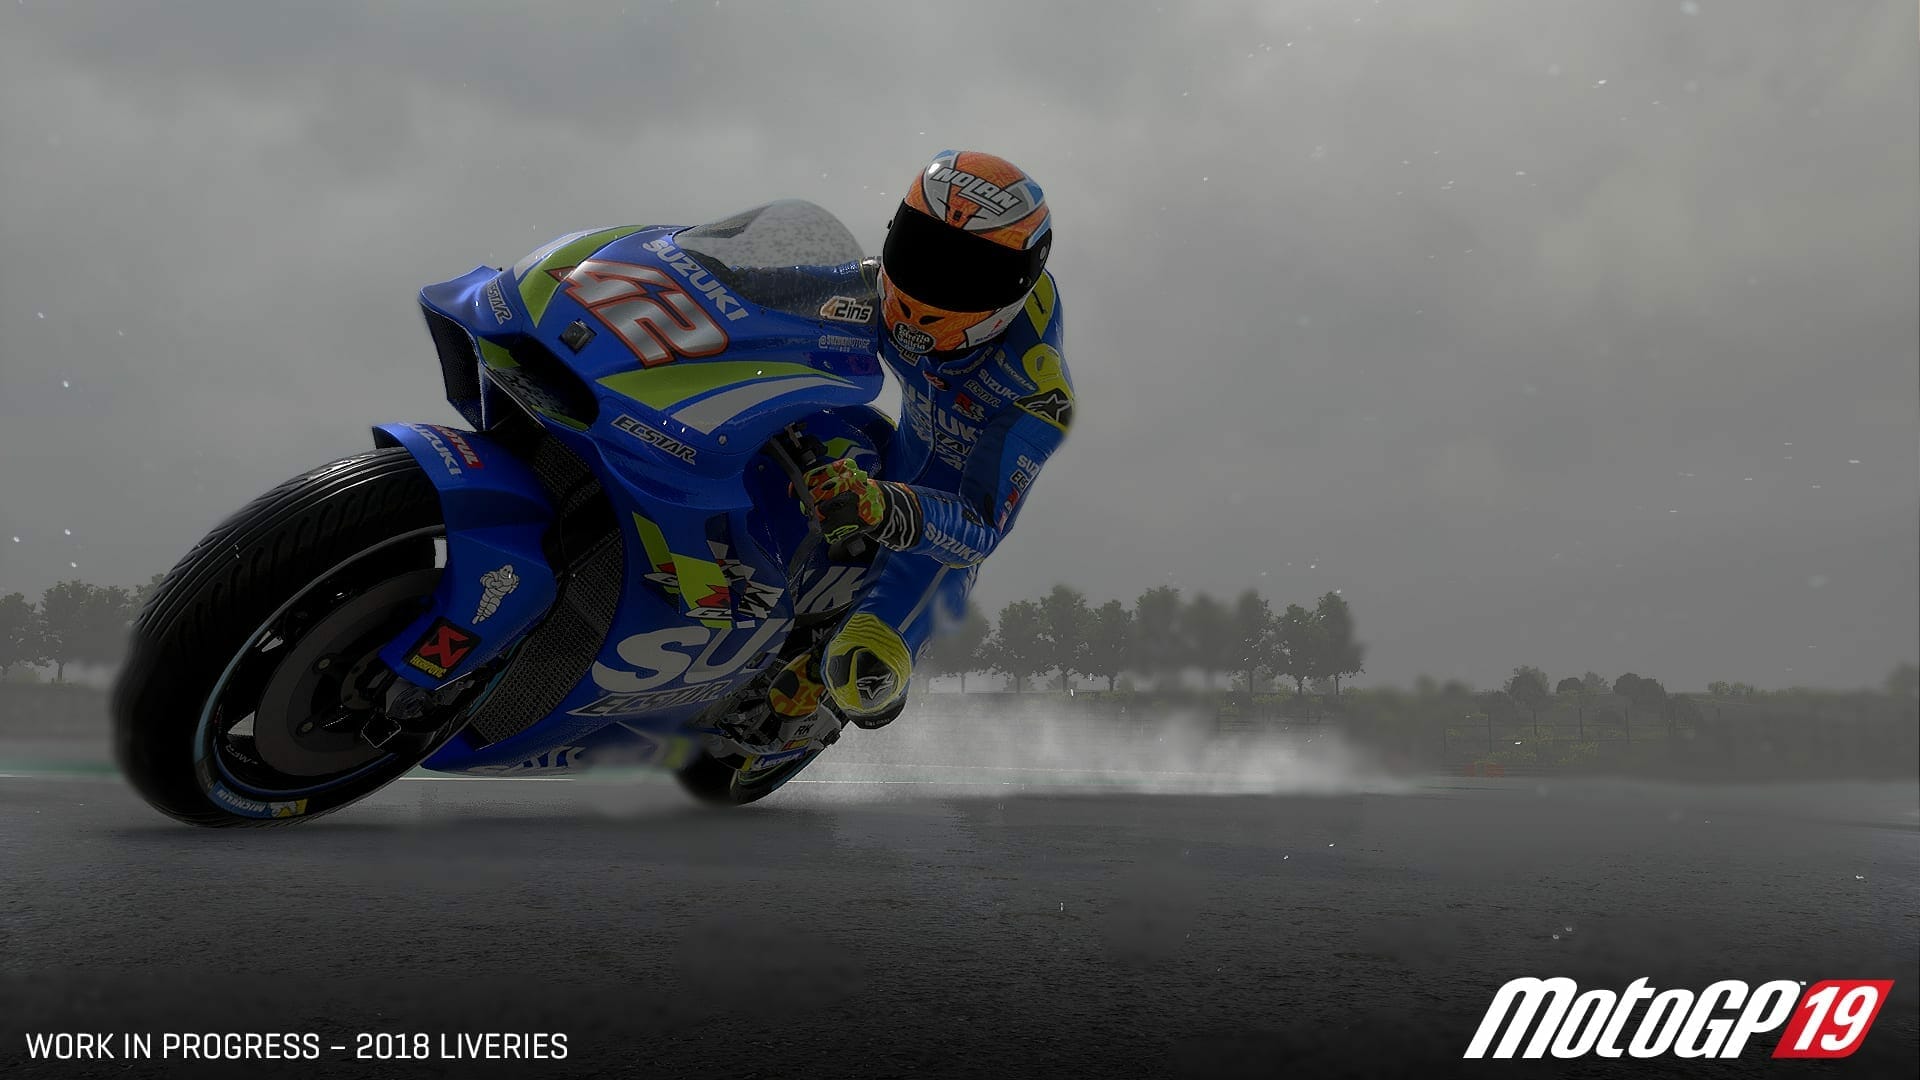 MotoGP 19 Release Date